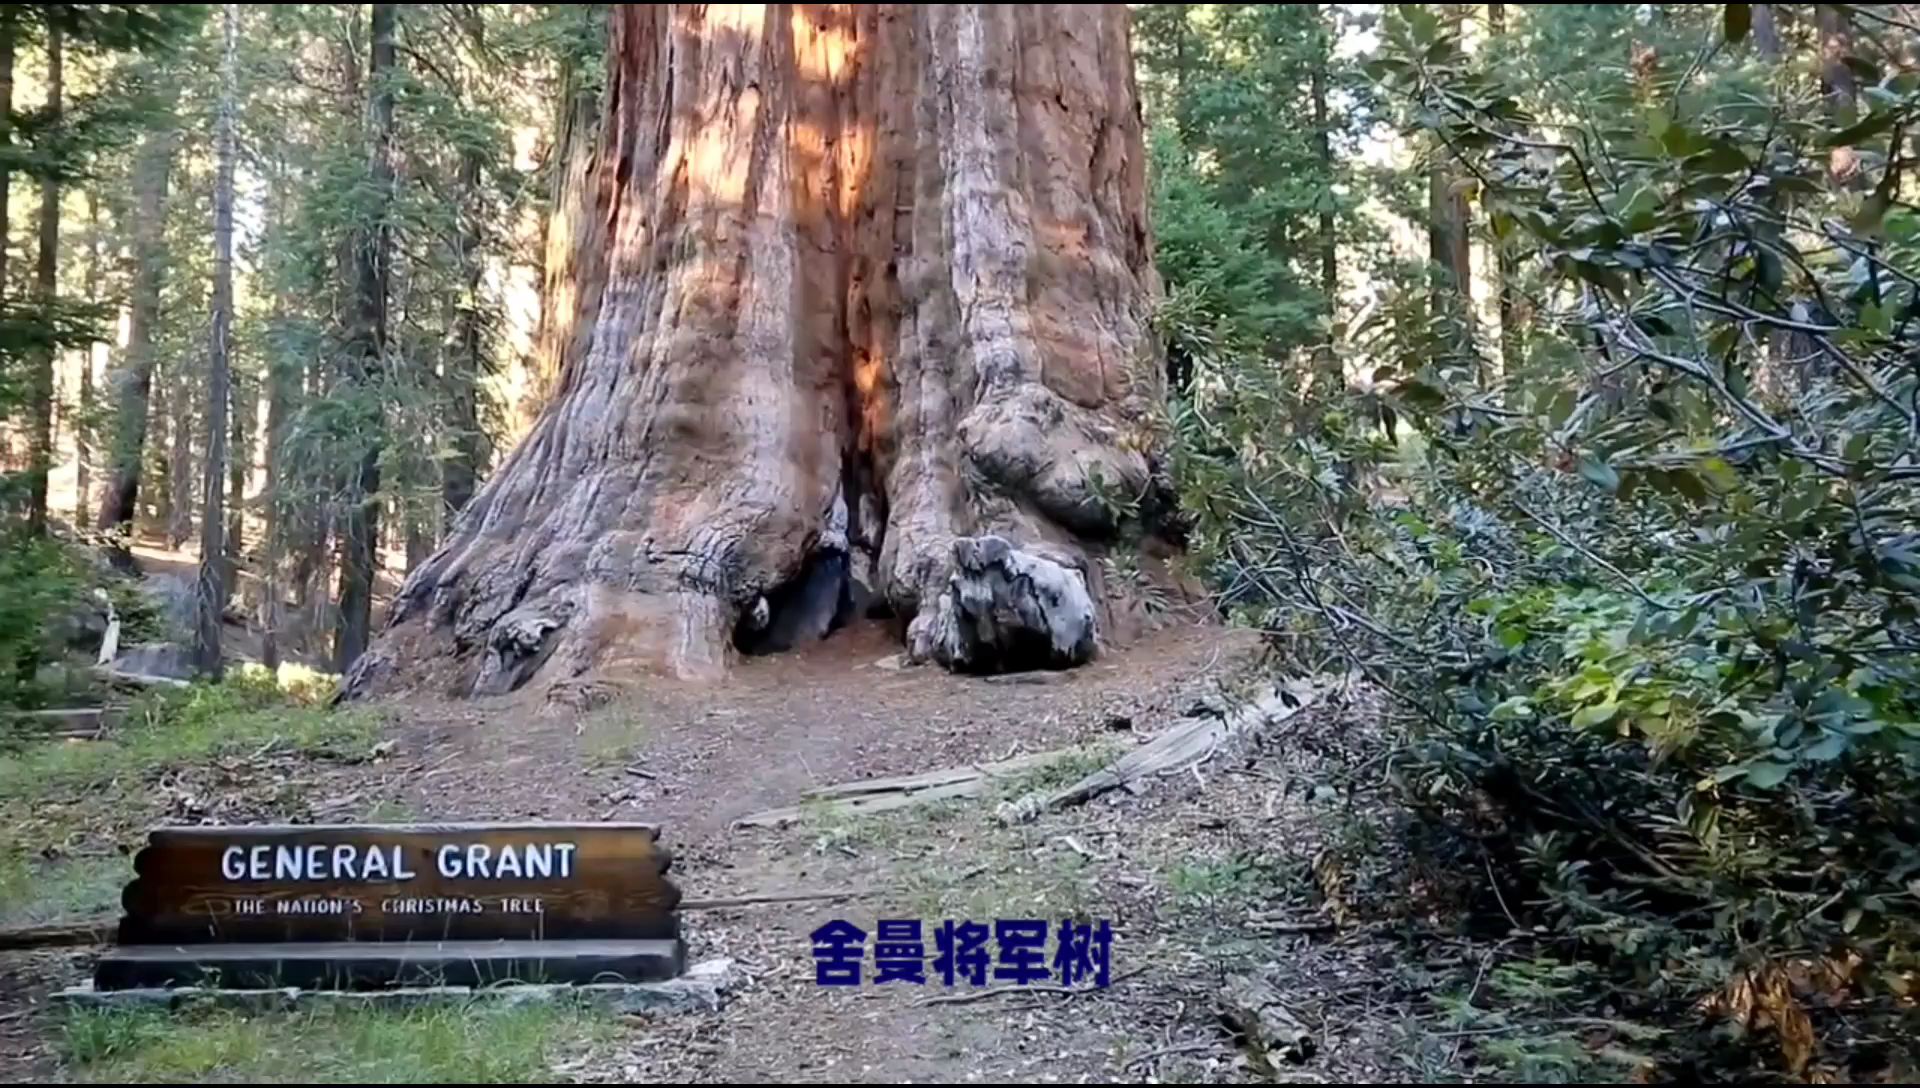 舍曼将军树，又名雪曼将军树，是位于美国加利福尼亚州的一棵巨杉。这棵树的树龄已经超过3500年，高度达